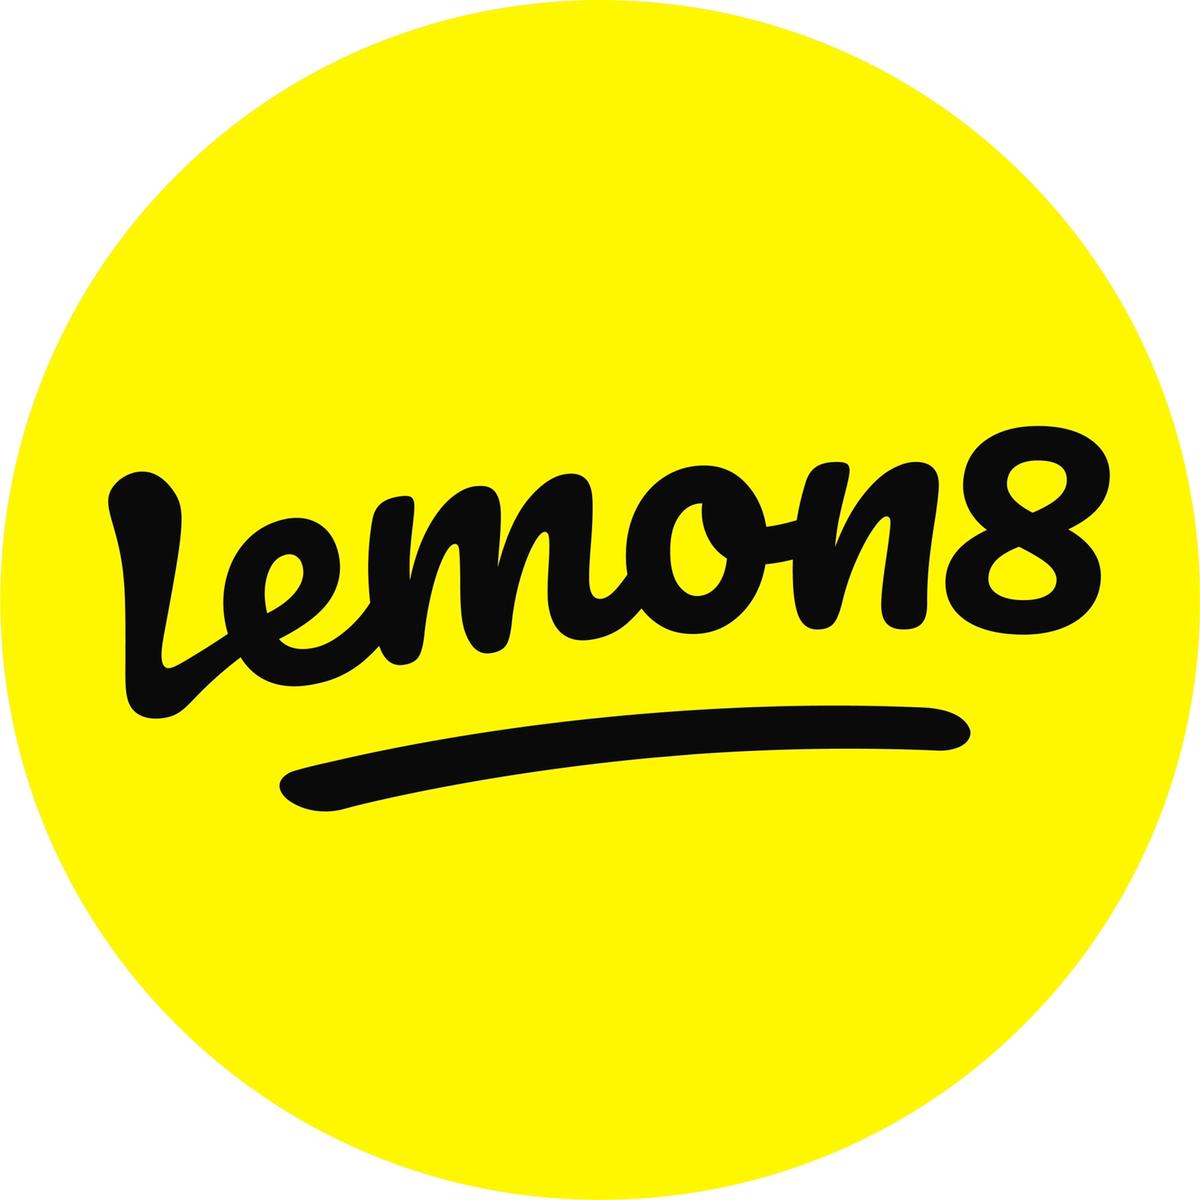 Lemon8_TH's images